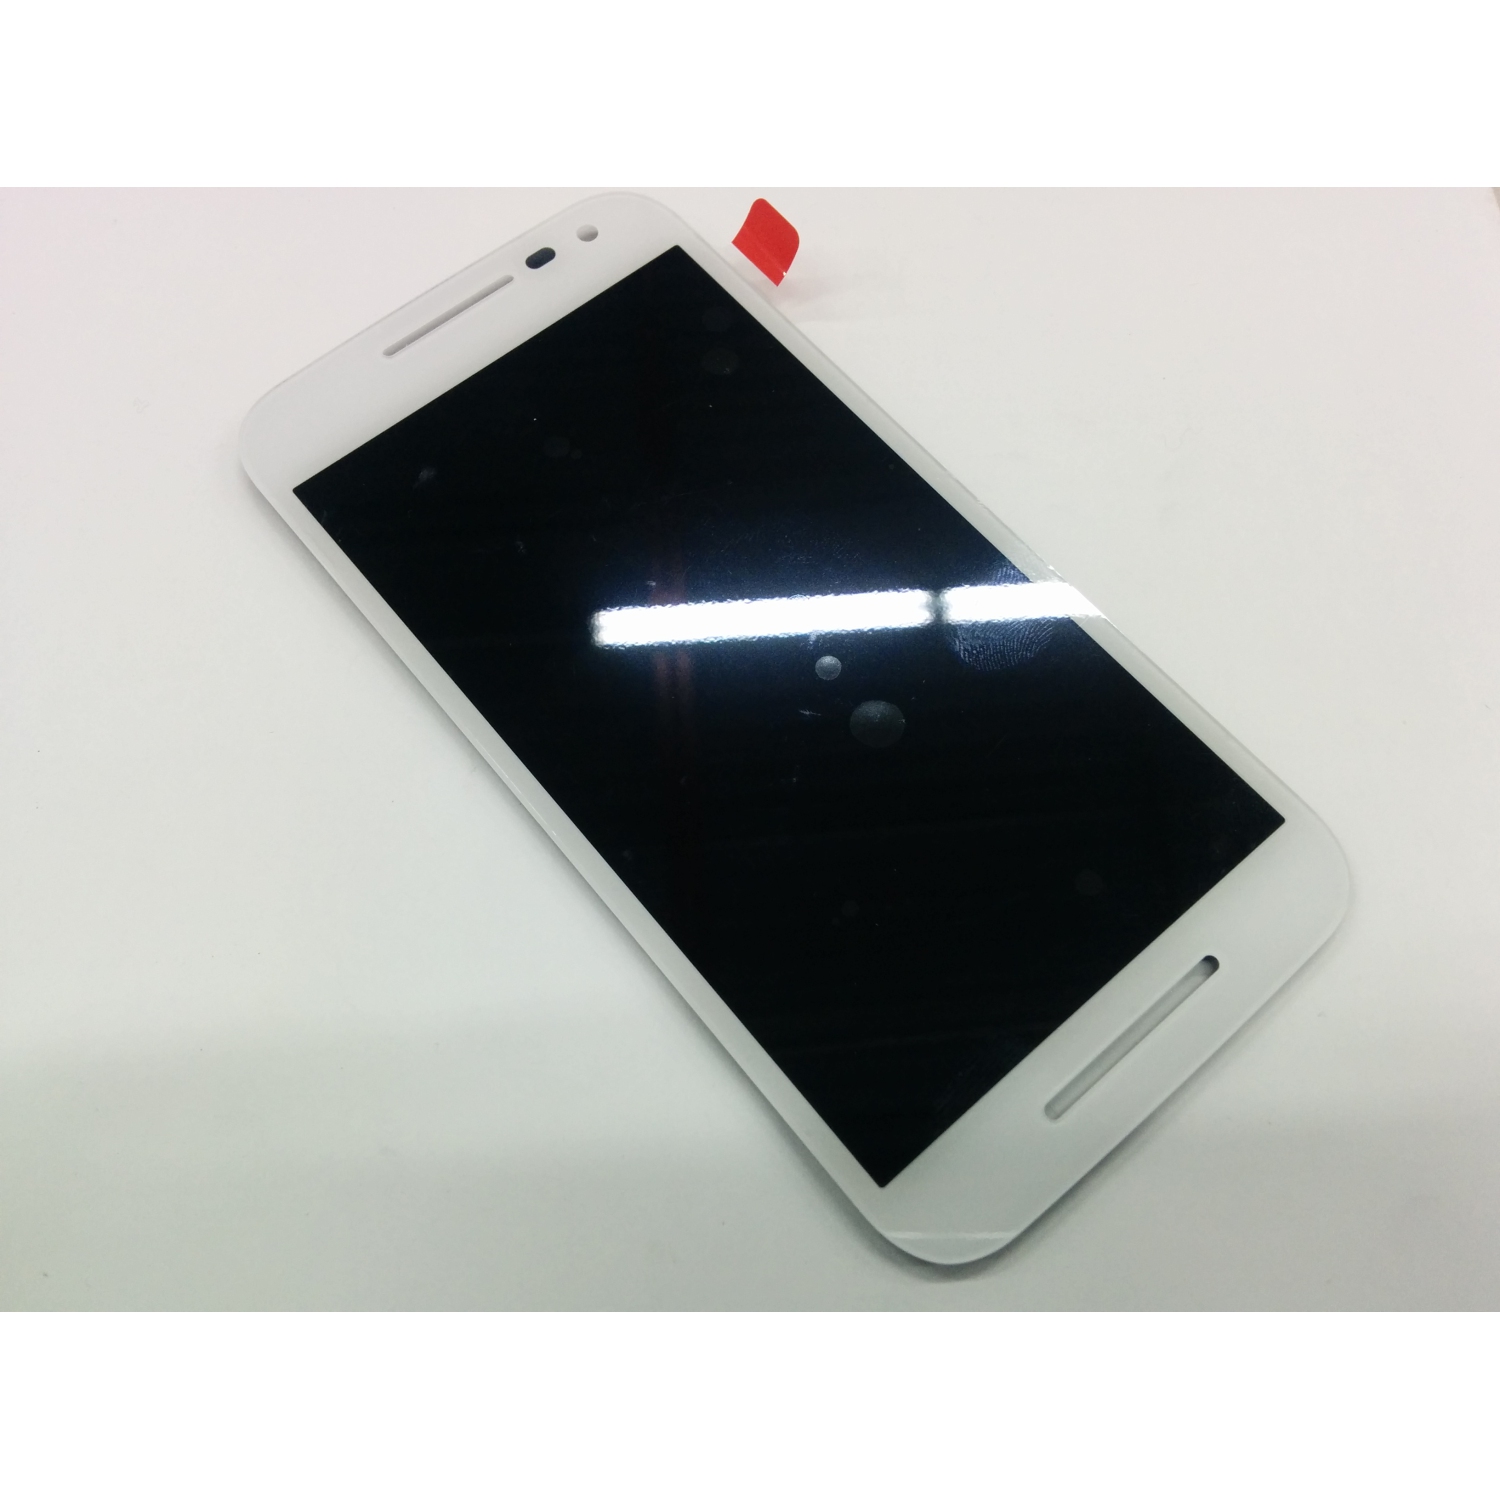 Motorola Moto G3 (2015) LCD Screen and Digitizer Assembly Replacement XT1552 XT1550 XT1548 XT1541 XT1540 - White